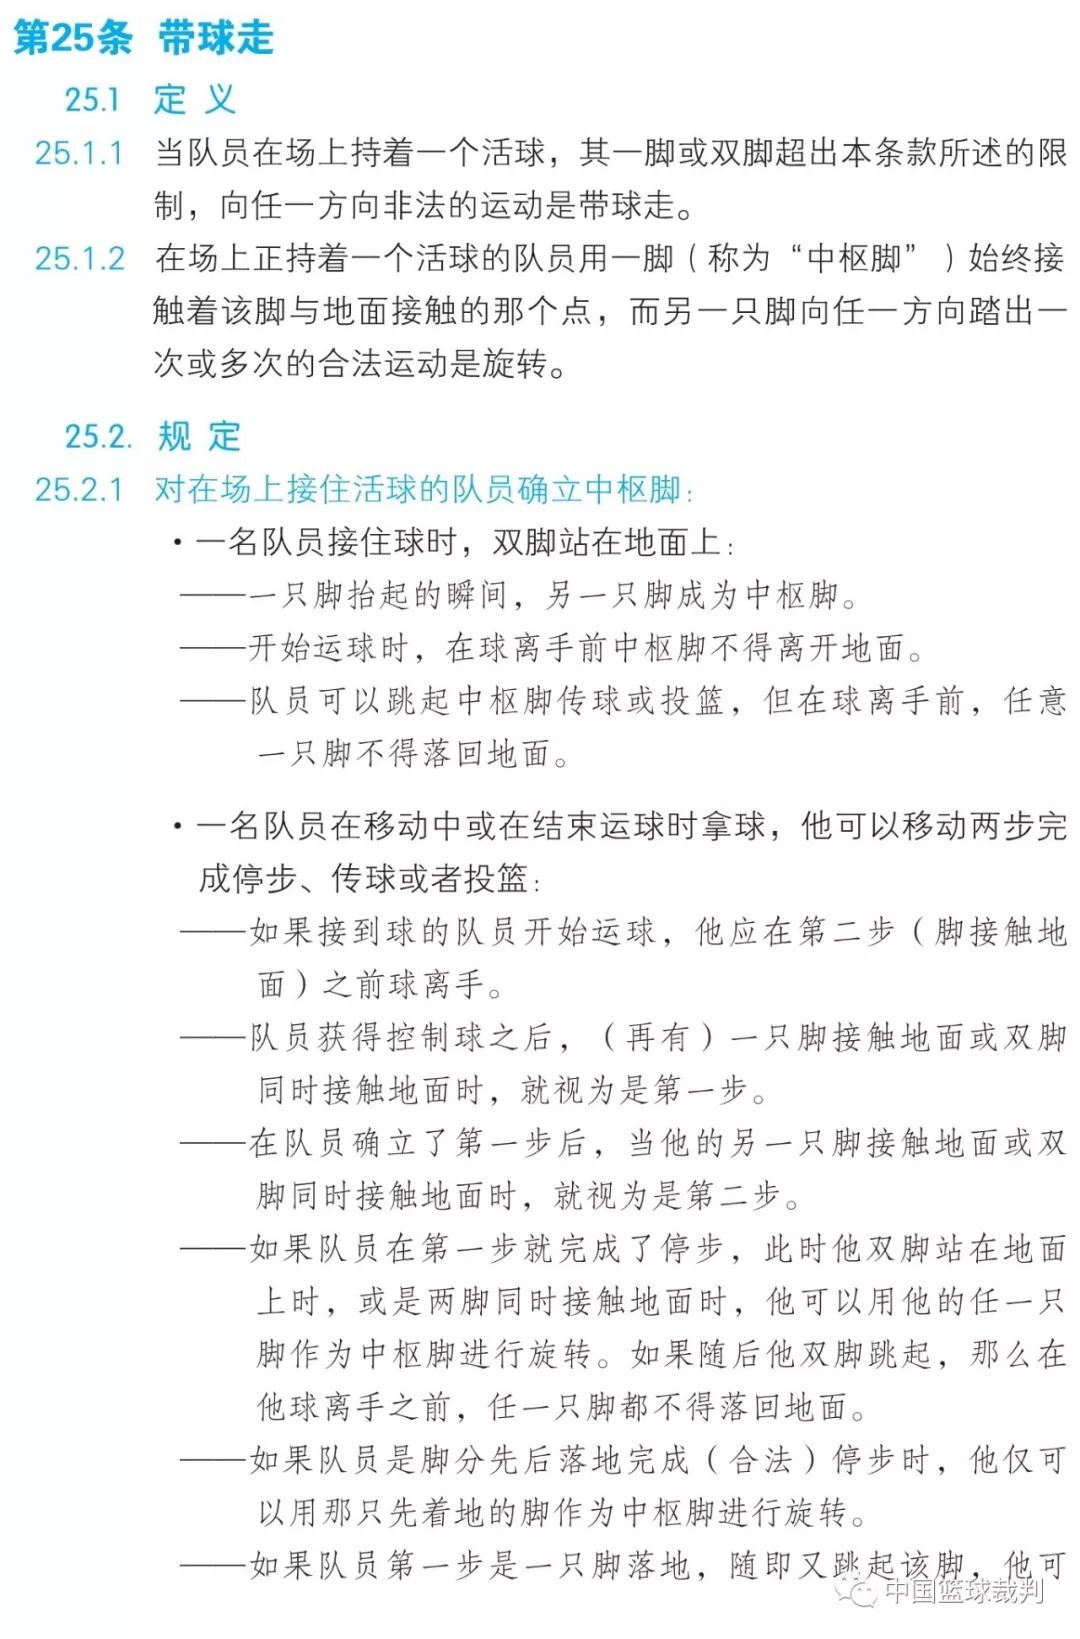 篮球规则2019中文版第五章违例第25条带球走